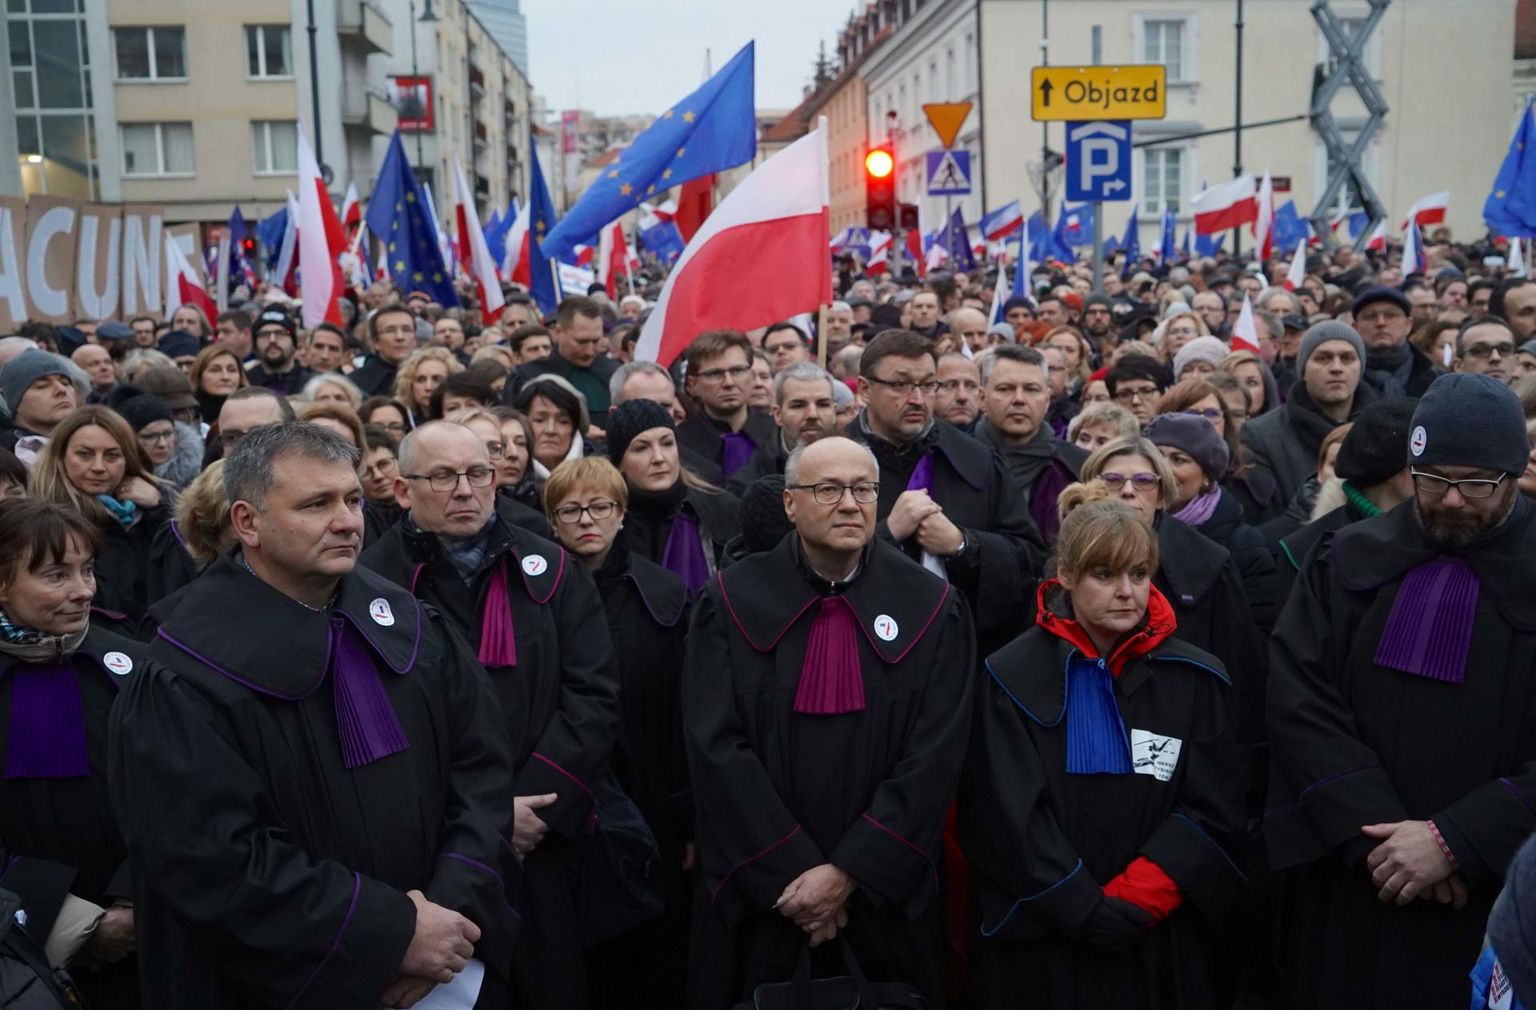 Poola kohtunikud ja juristid on korduvalt avaldanud meelt valitsuse justiitsreformi vastu, nii ka tänavu jaanuari keskel, kui tuldi tänavatele nii Poola kui ka Euroopa Liidu lippudega.